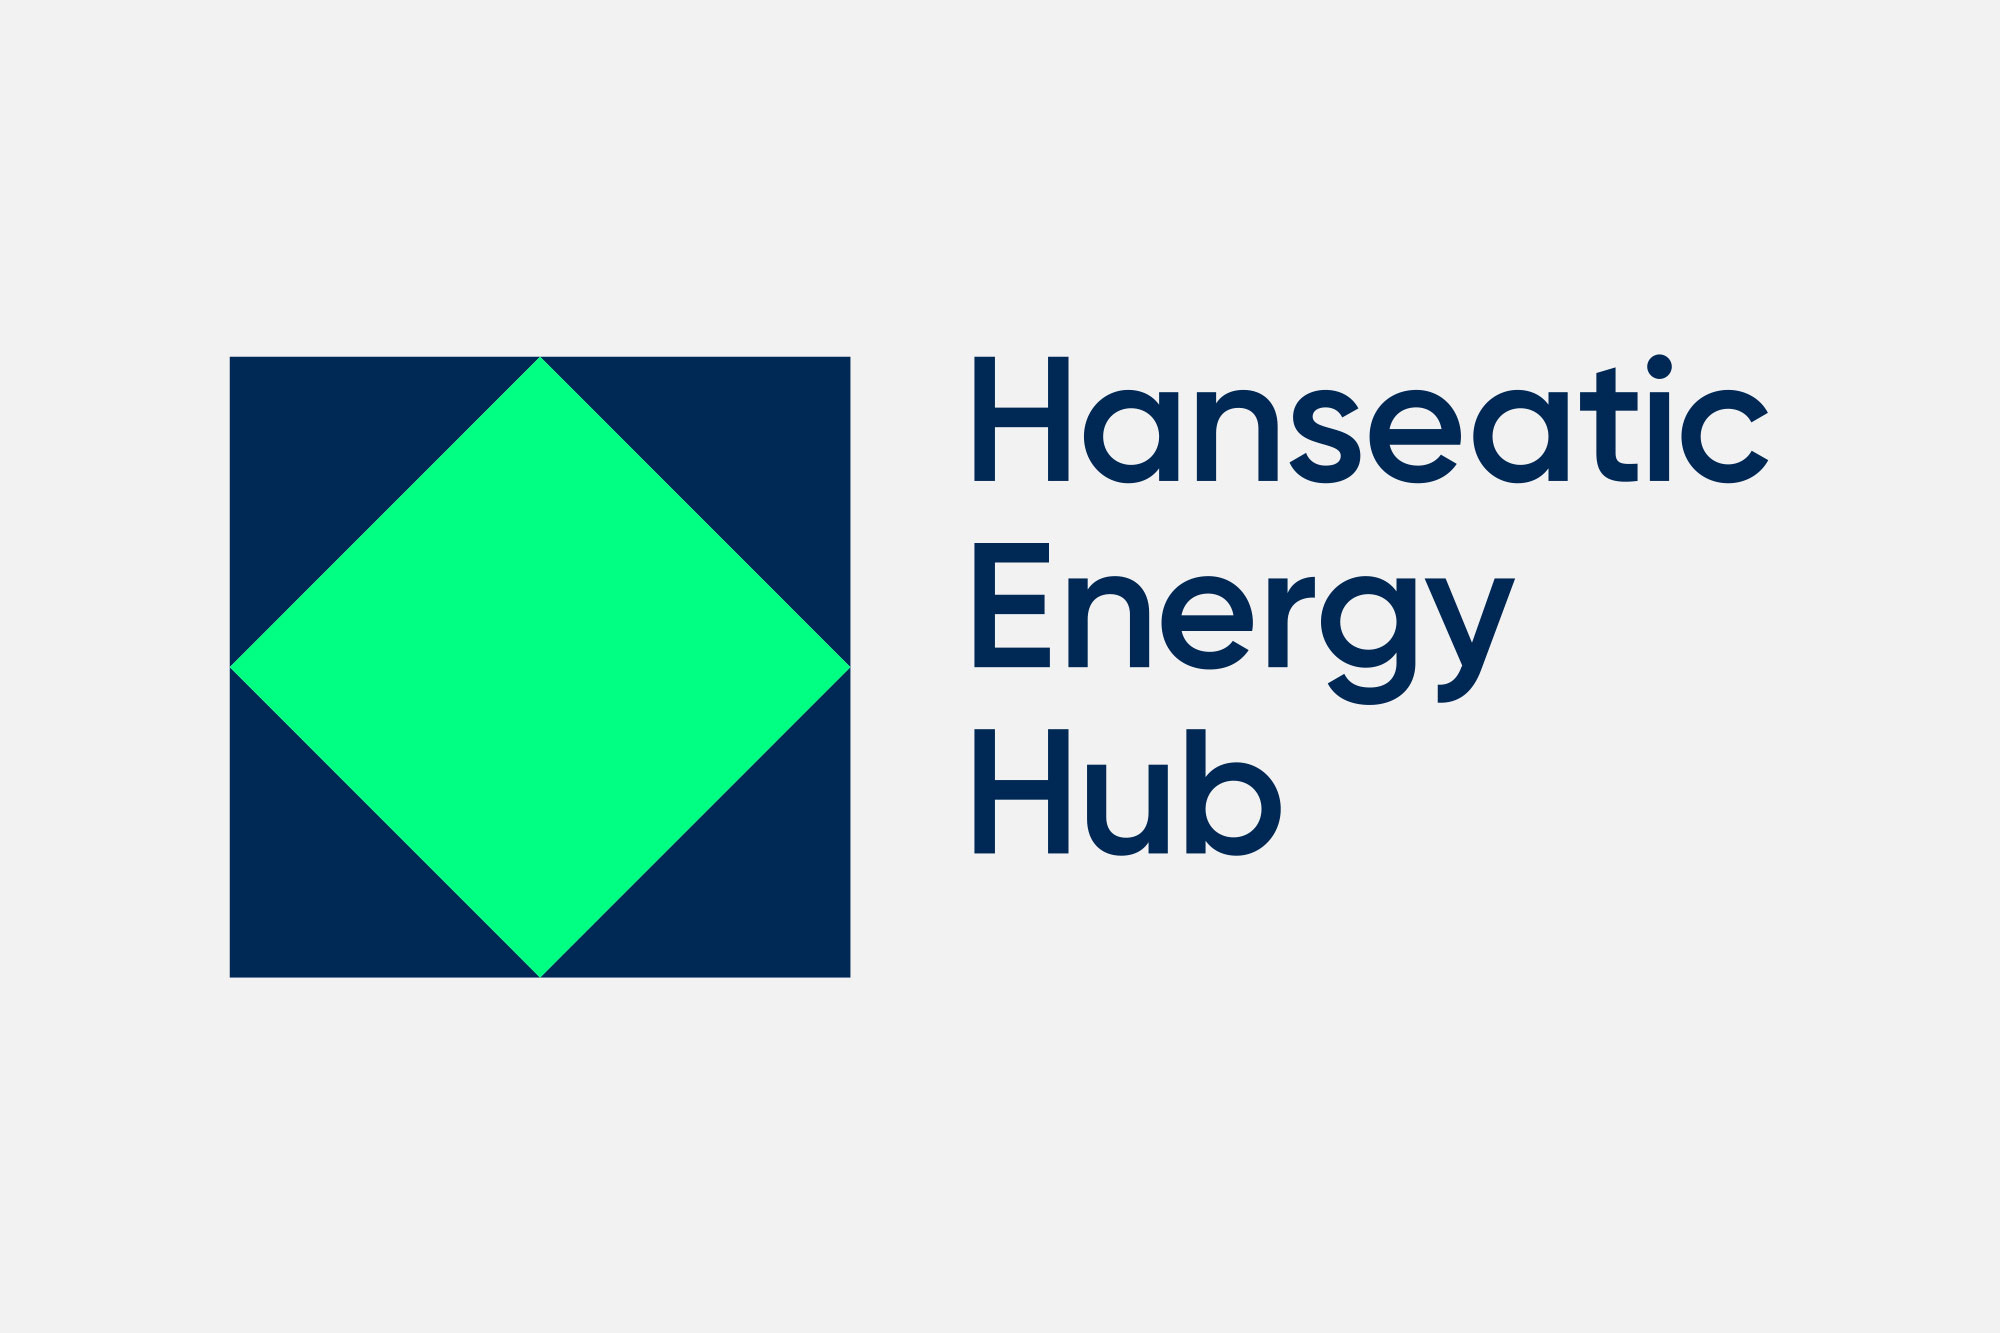 Hanseatic Energy Hub Logo in dunkelblau und knallgrün auf grauem Hintergrund